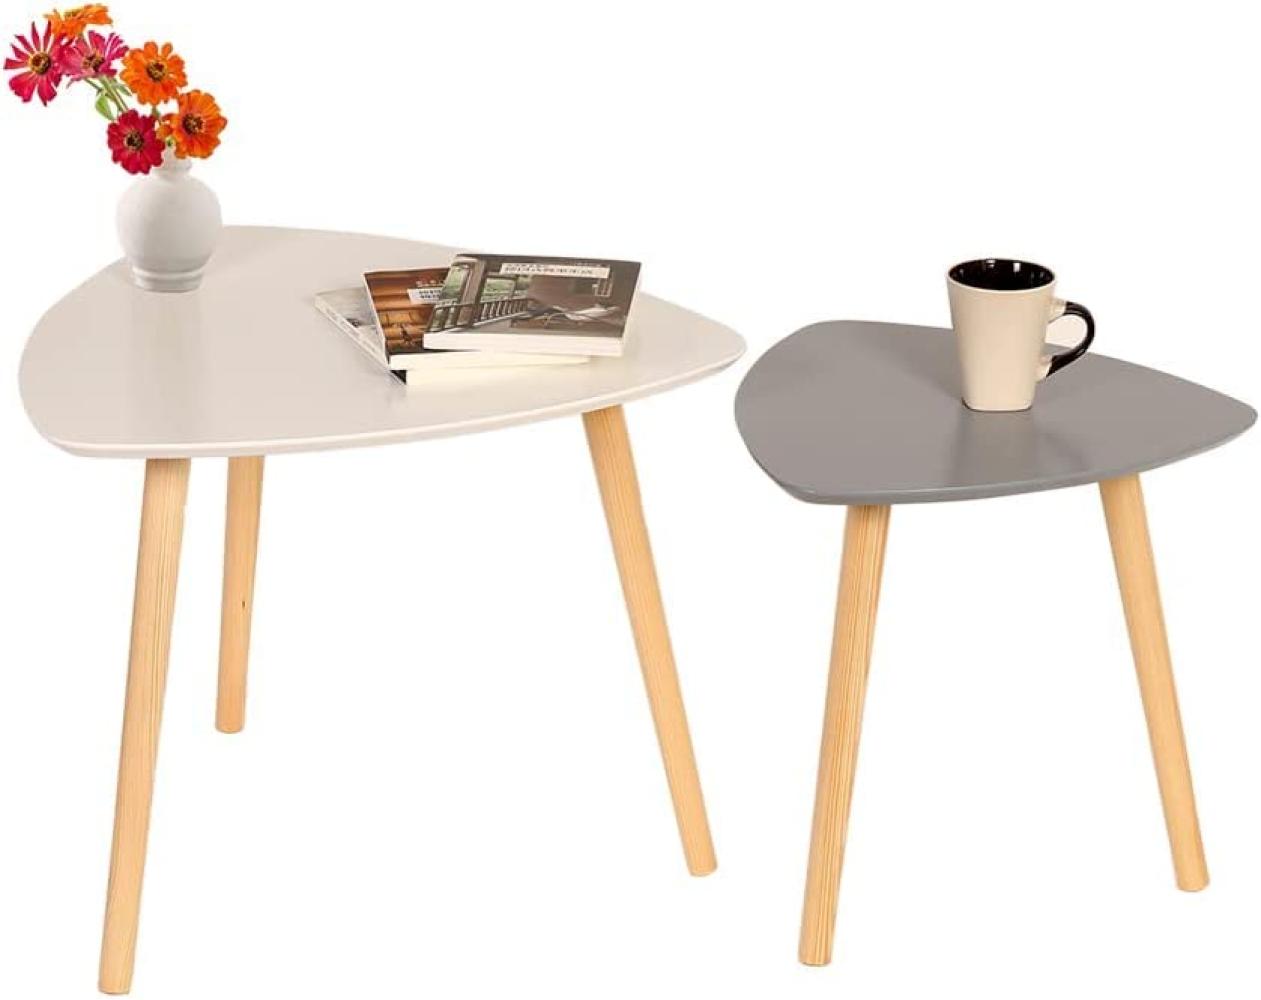 Couchtische Sofatisch 2er Set Beistelltische Wohnzimmertisch skandinavisch Kaffeetisch Satztisch für Wohnzimmer Schlafzimmer Minimalismus weiß grau elegant HWB05-GWE Bild 1